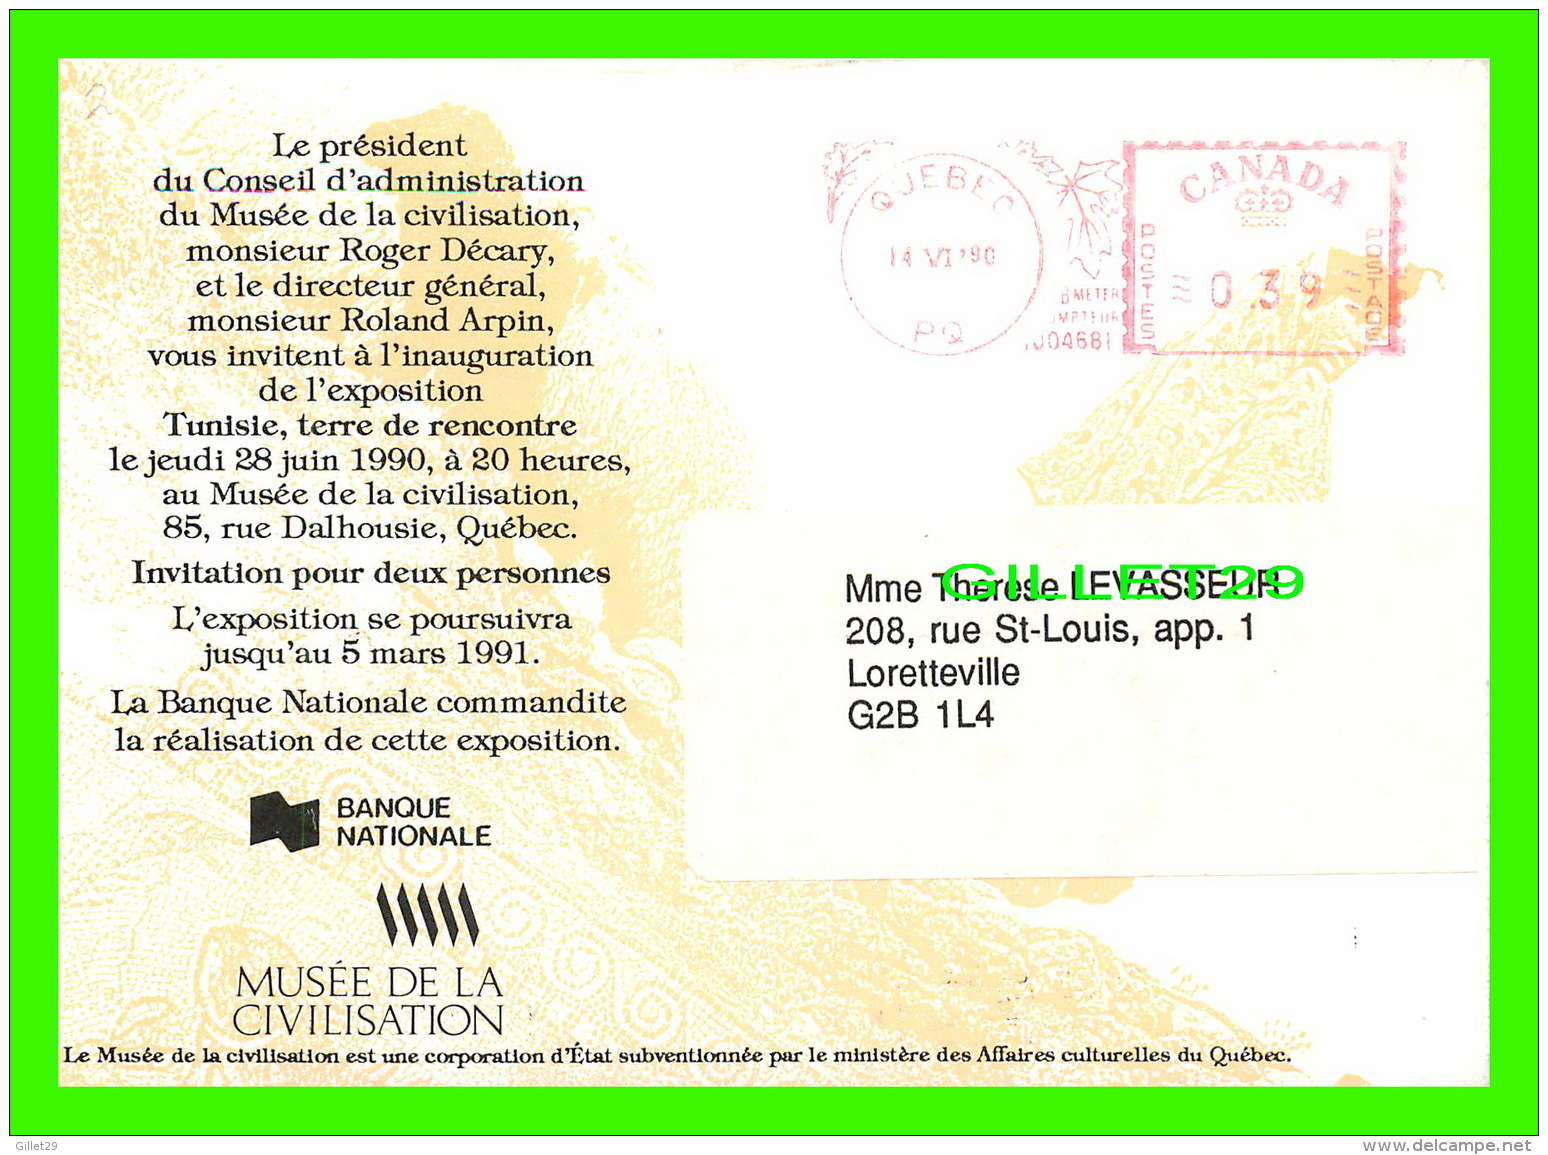 ADVERTISING, PUBLICITÉ - MUSÉE DE LA CIVILISATION DE QUÉBEC PRÉSENTE, TUNISIE, TERRE DE RENCONTRE EN 1990 - - Publicité